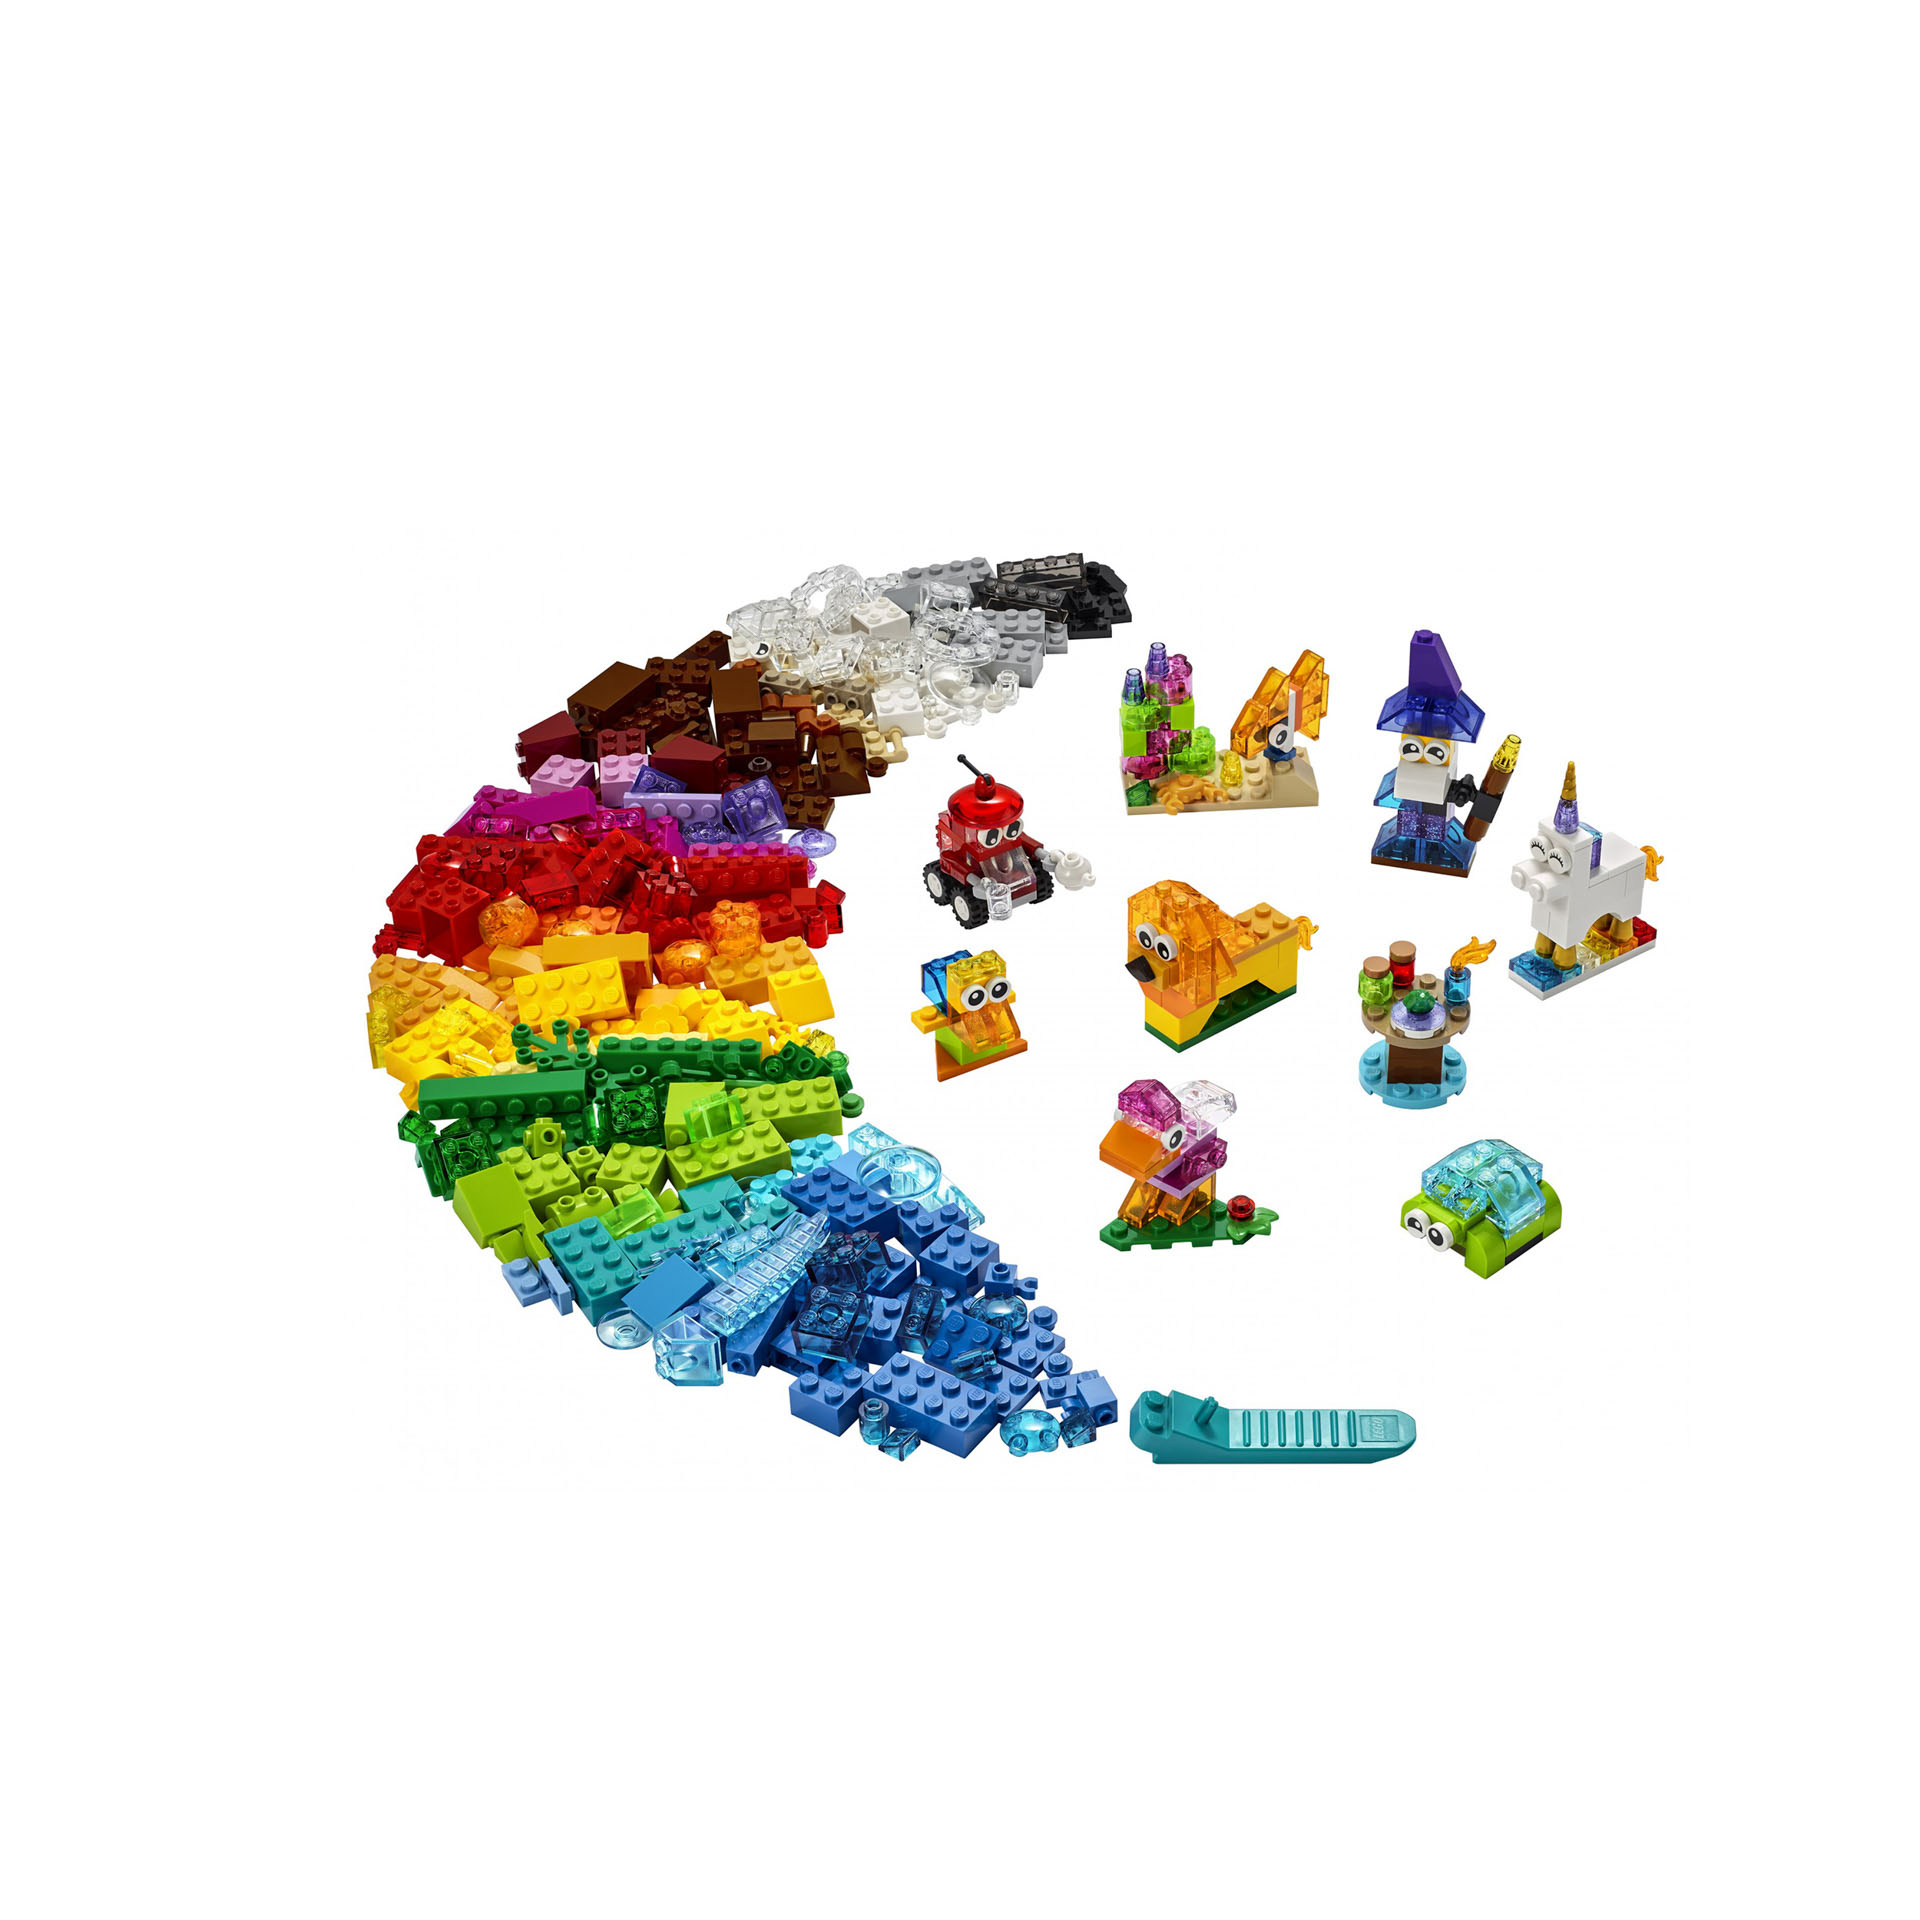 LEGO Classic Mattoncini Trasparenti Creativi, con Animali (Leone, Uccello e Tart 11013, , large